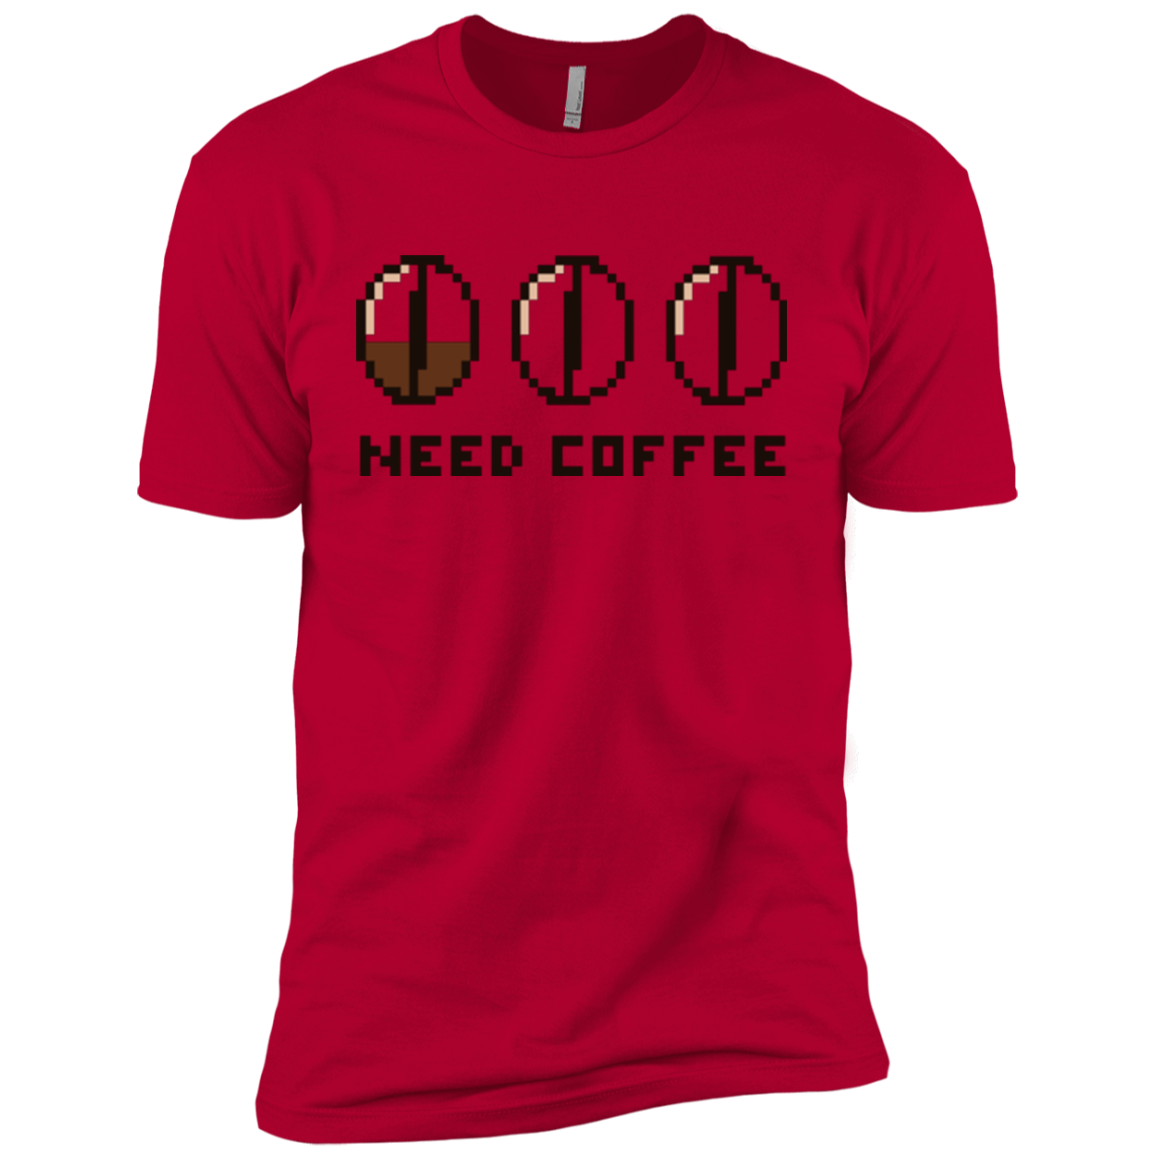 Need Coffee Boys Premium T-Shirt